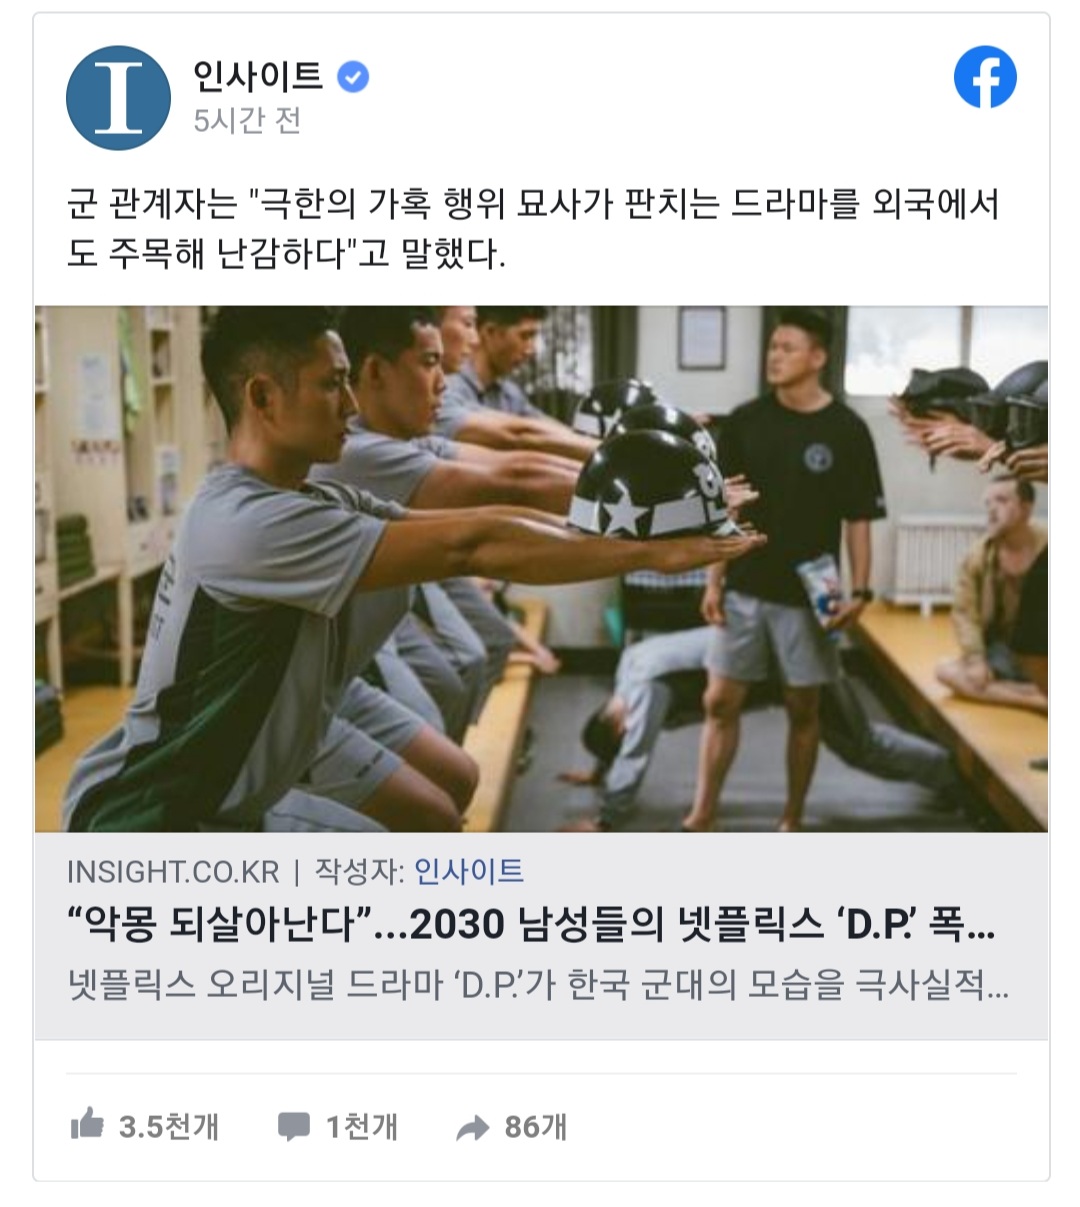 군 관계자" 드라마 DP, 극한의 가혹행위 묘사가 판치는 드라마를 외국에서 주목해 난감"